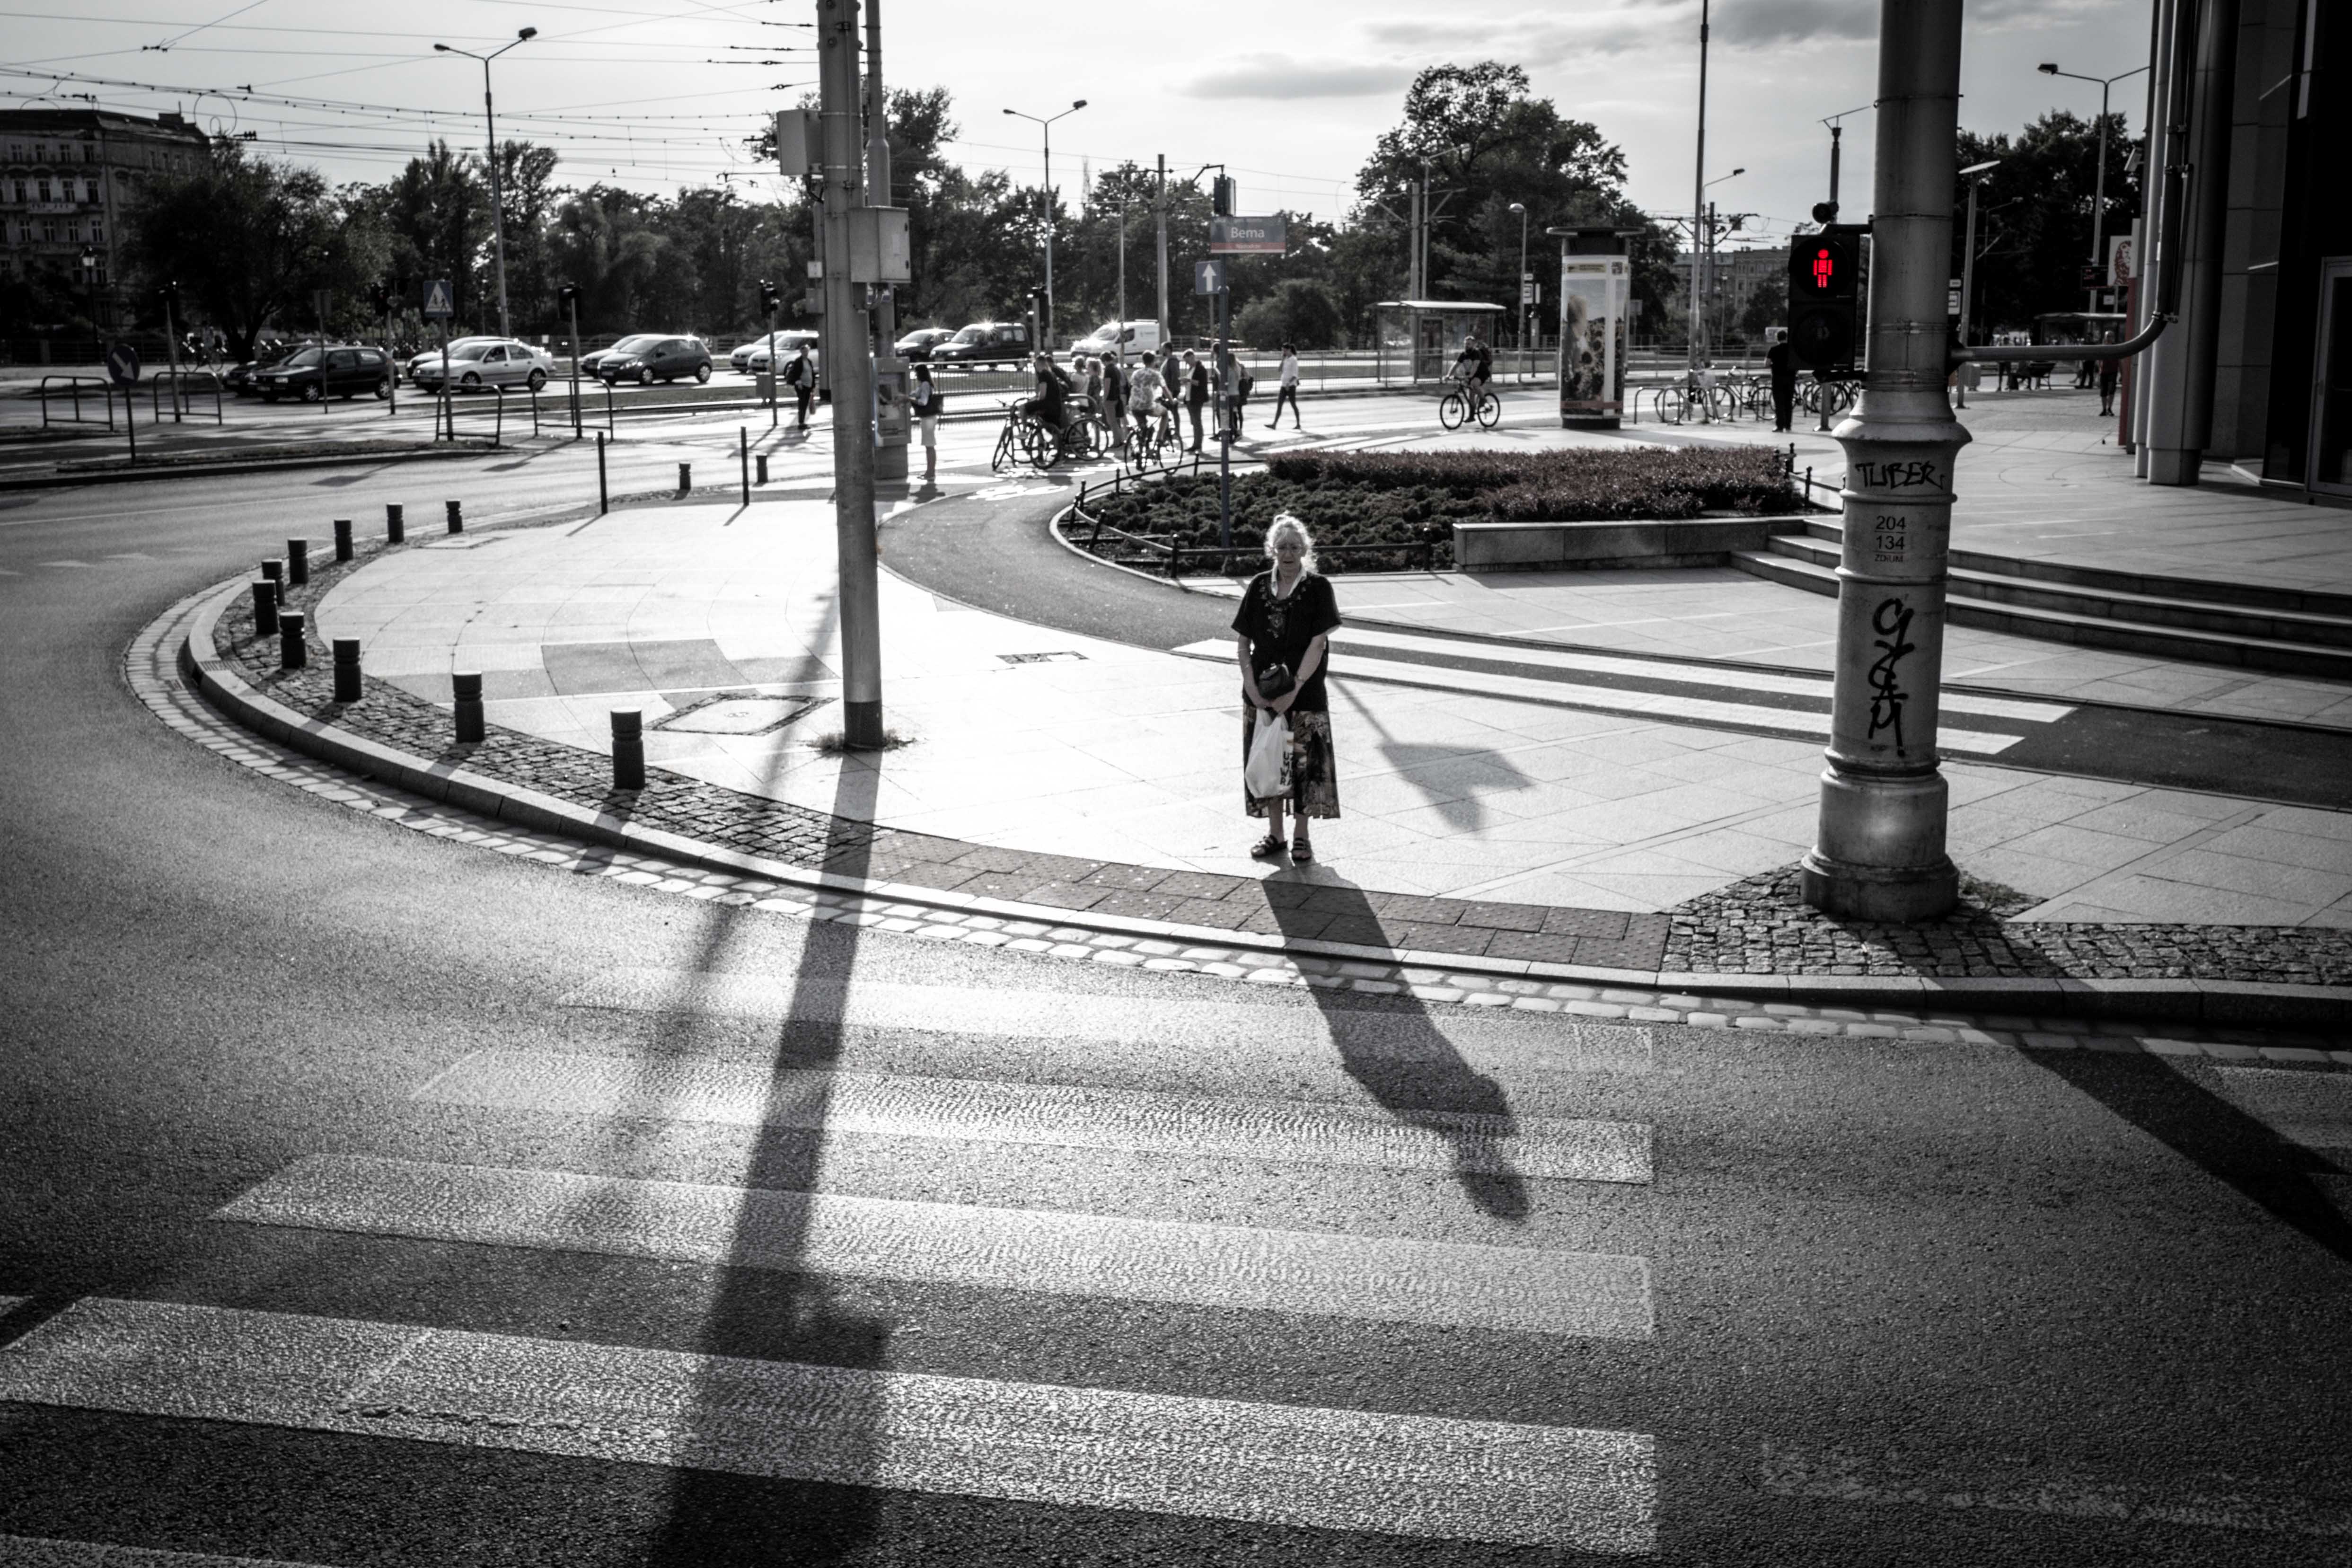 Ein schwarzweiss Bild, aufgenommen mit einer Leica Kamera in Breslau. Das Bild zeigt eine städtische Umgebung mit einer Straße, einem Gehweg und Verkehrszeichen. Eine Person steht auf dem Gehweg nahe der Straßenkreuzung und wartet darauf, die Straße zu überqueren. Die Ampel zeigt ein rotes Licht an. Im Hintergrund sind weitere Personen sichtbar, die sich auf dem gegenüberliegenden Gehweg aufhalten. Die Sonne scheint hell und erzeugt deutliche Schatten der Objekte auf der Straße und dem Gehweg. Mit Klick auf das Bild, kann man das Motiv als Wandbild erwerben.